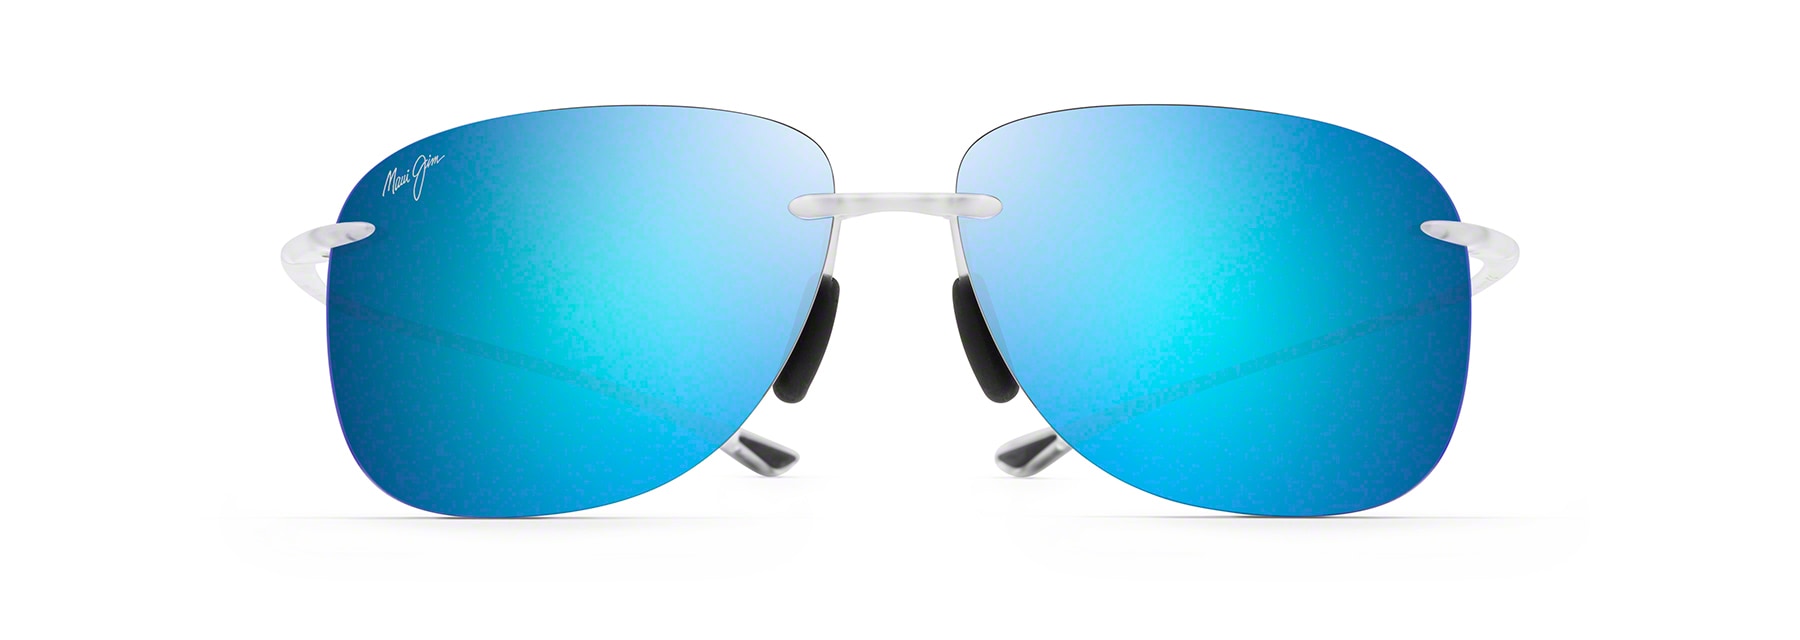 Maui Jim Kawika Polarized Sunglasses - Men's | REI Co-op